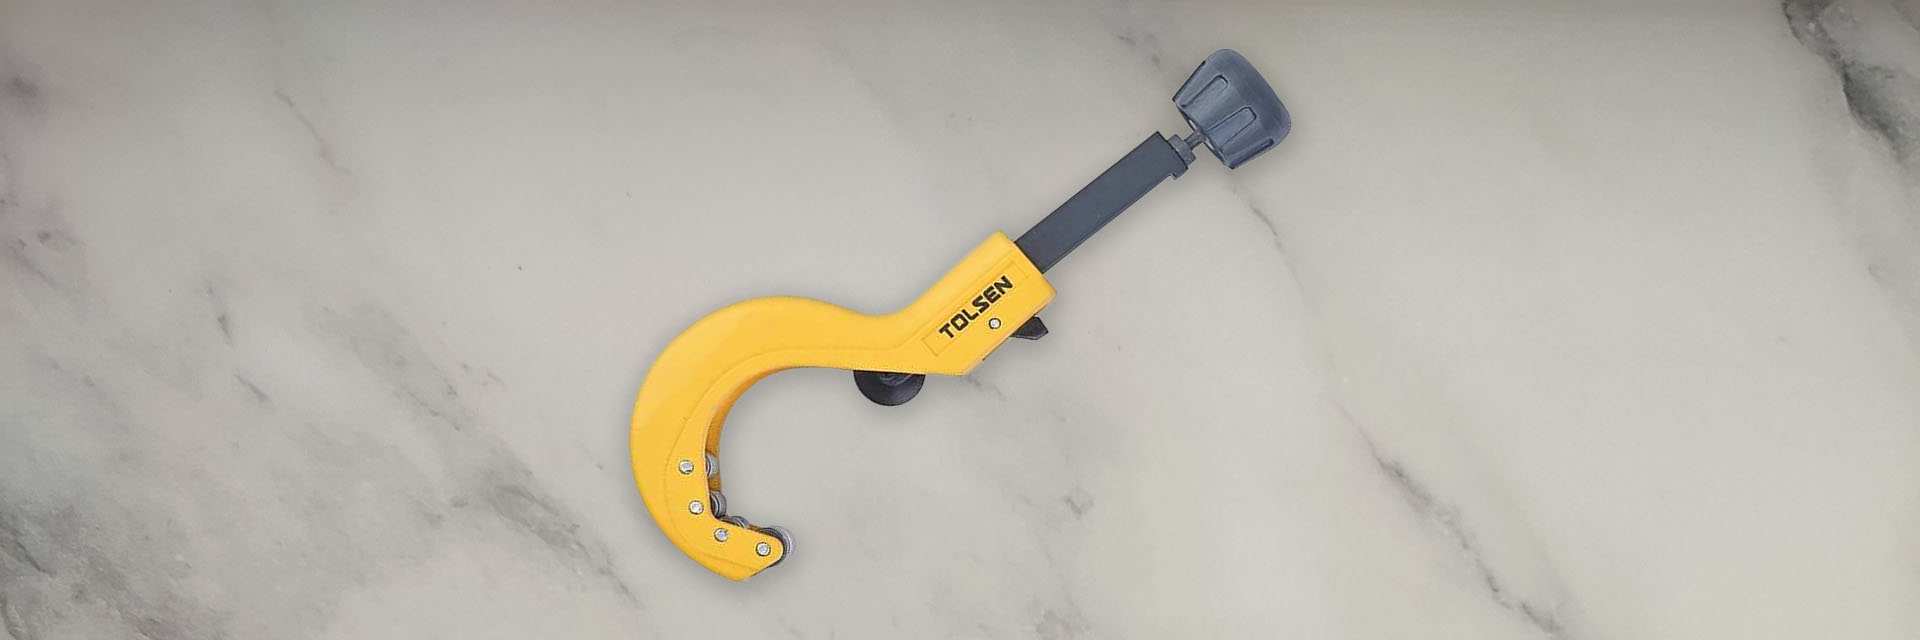 Plumbing tools - Đồ nghề sửa nước Tolsen